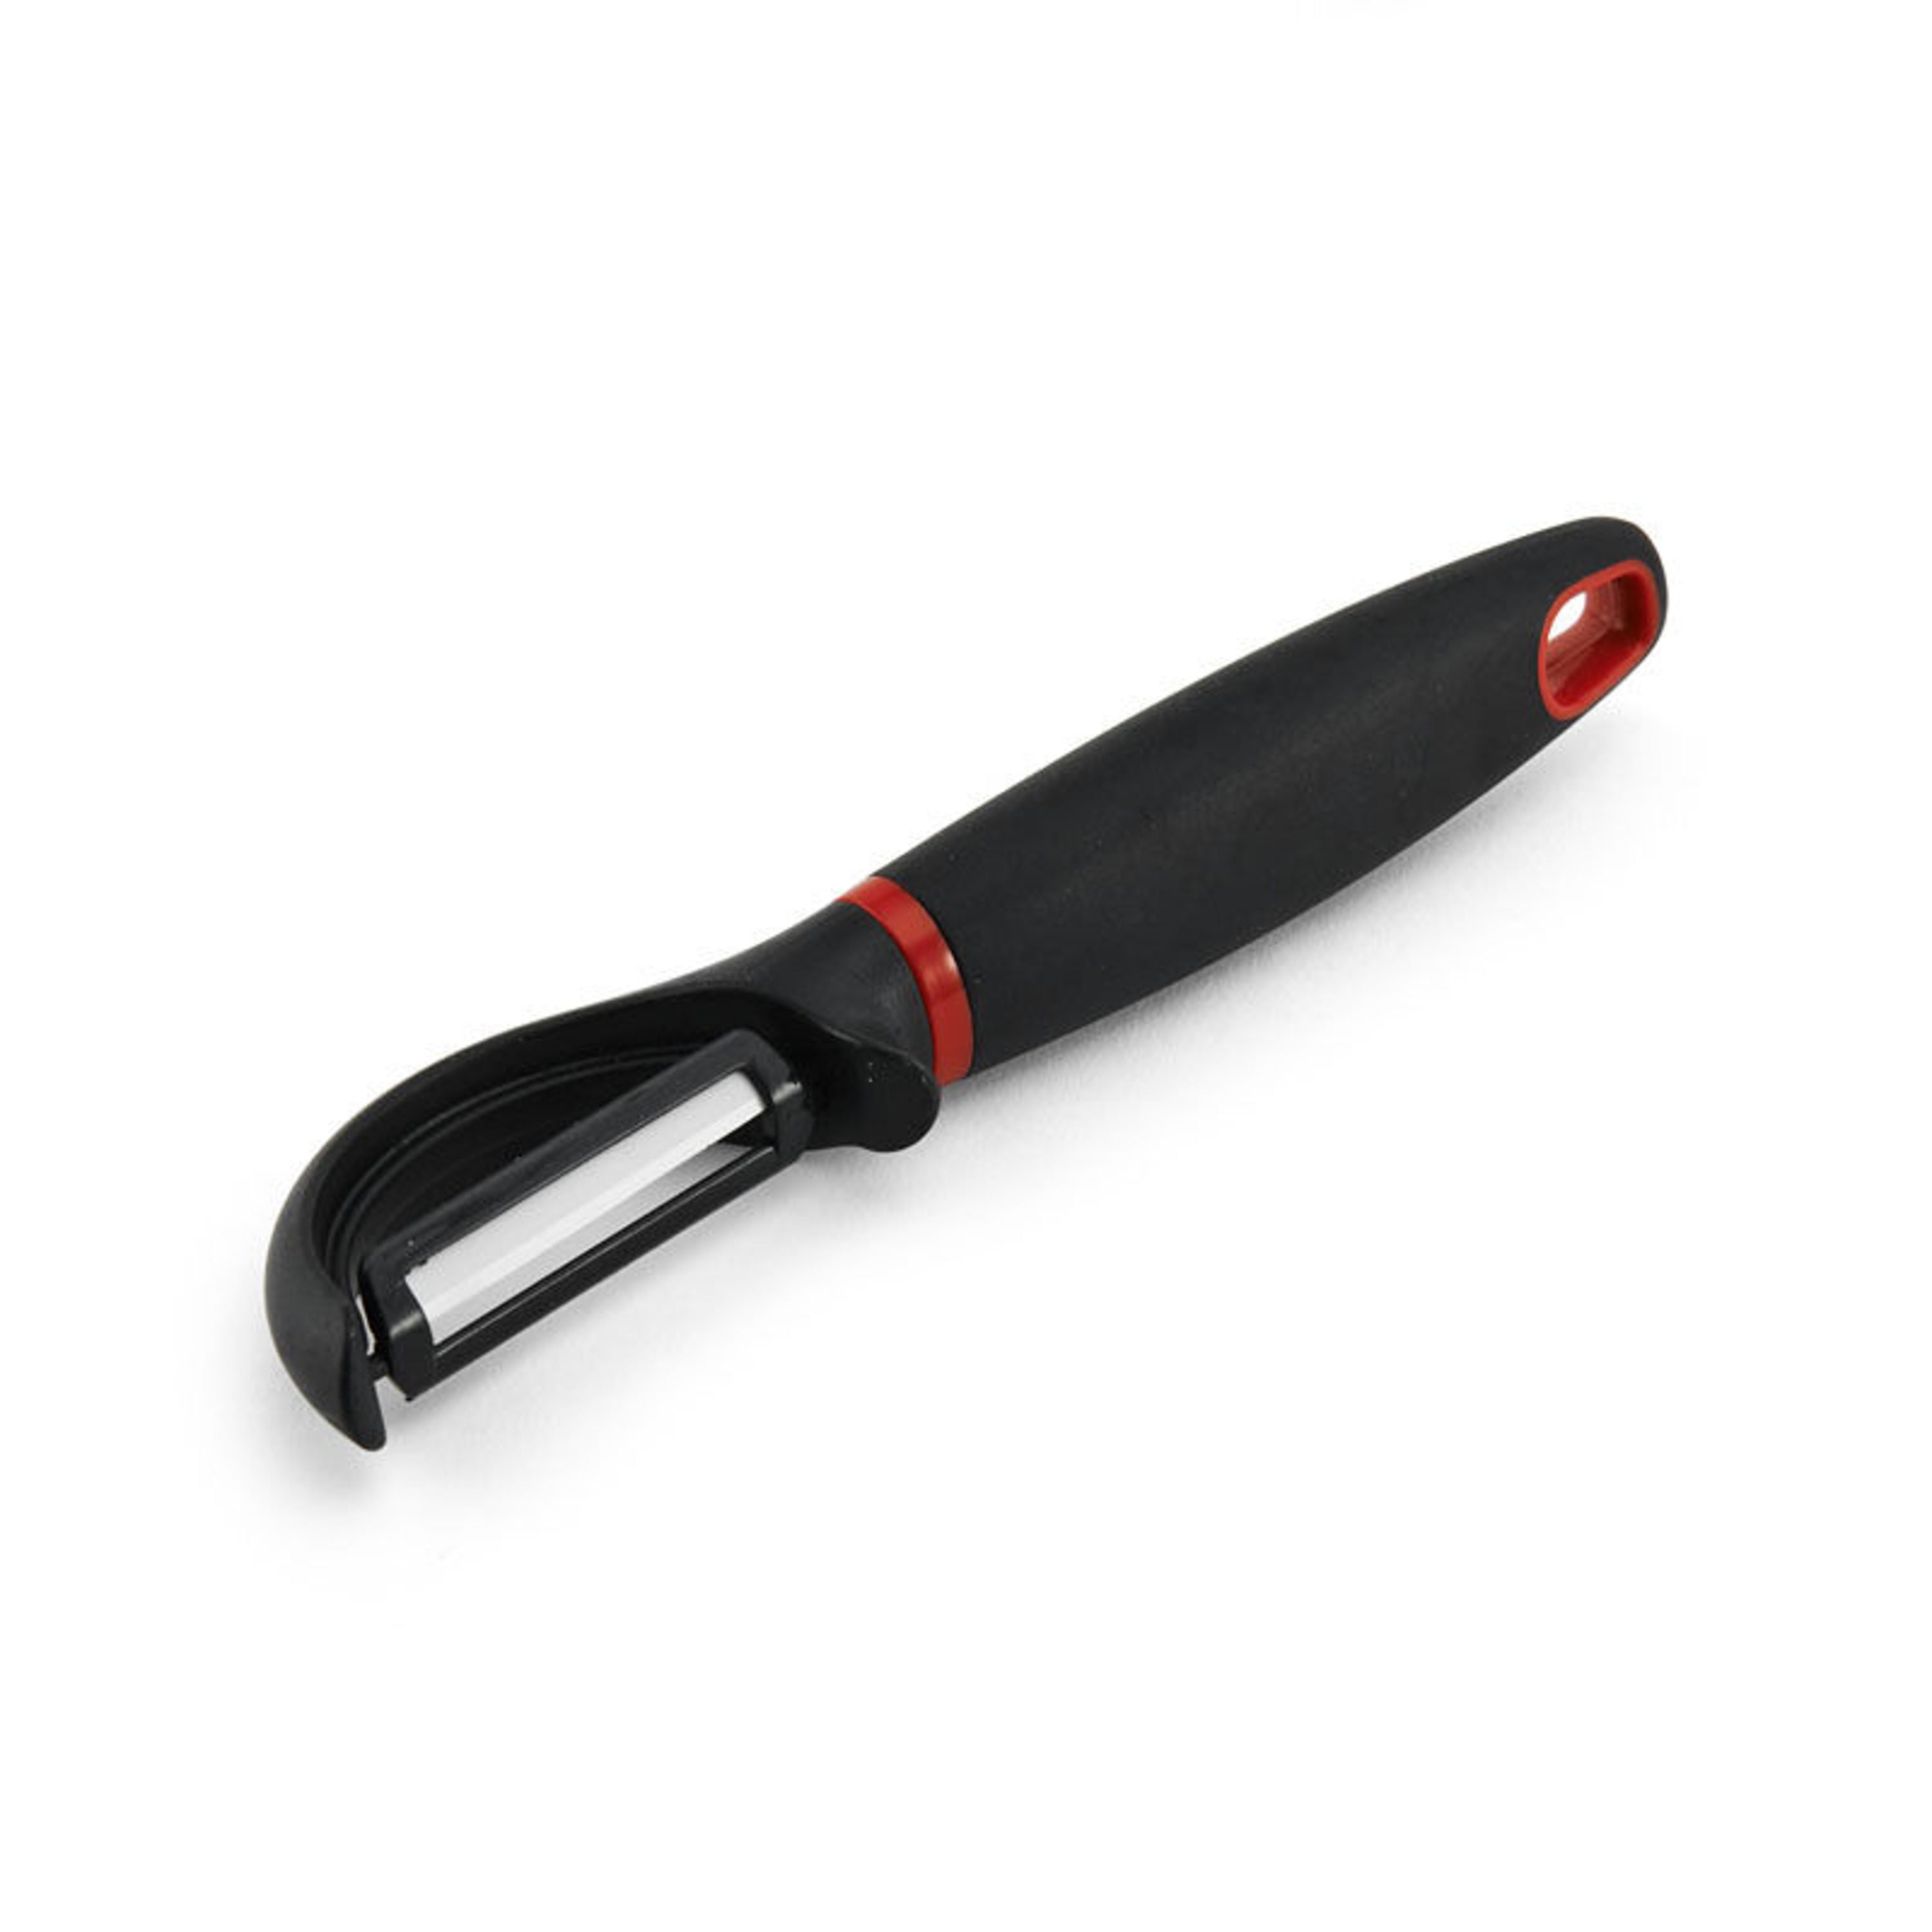 Farberware Professional Swivel Peeler Stainless Steel Blade in Black